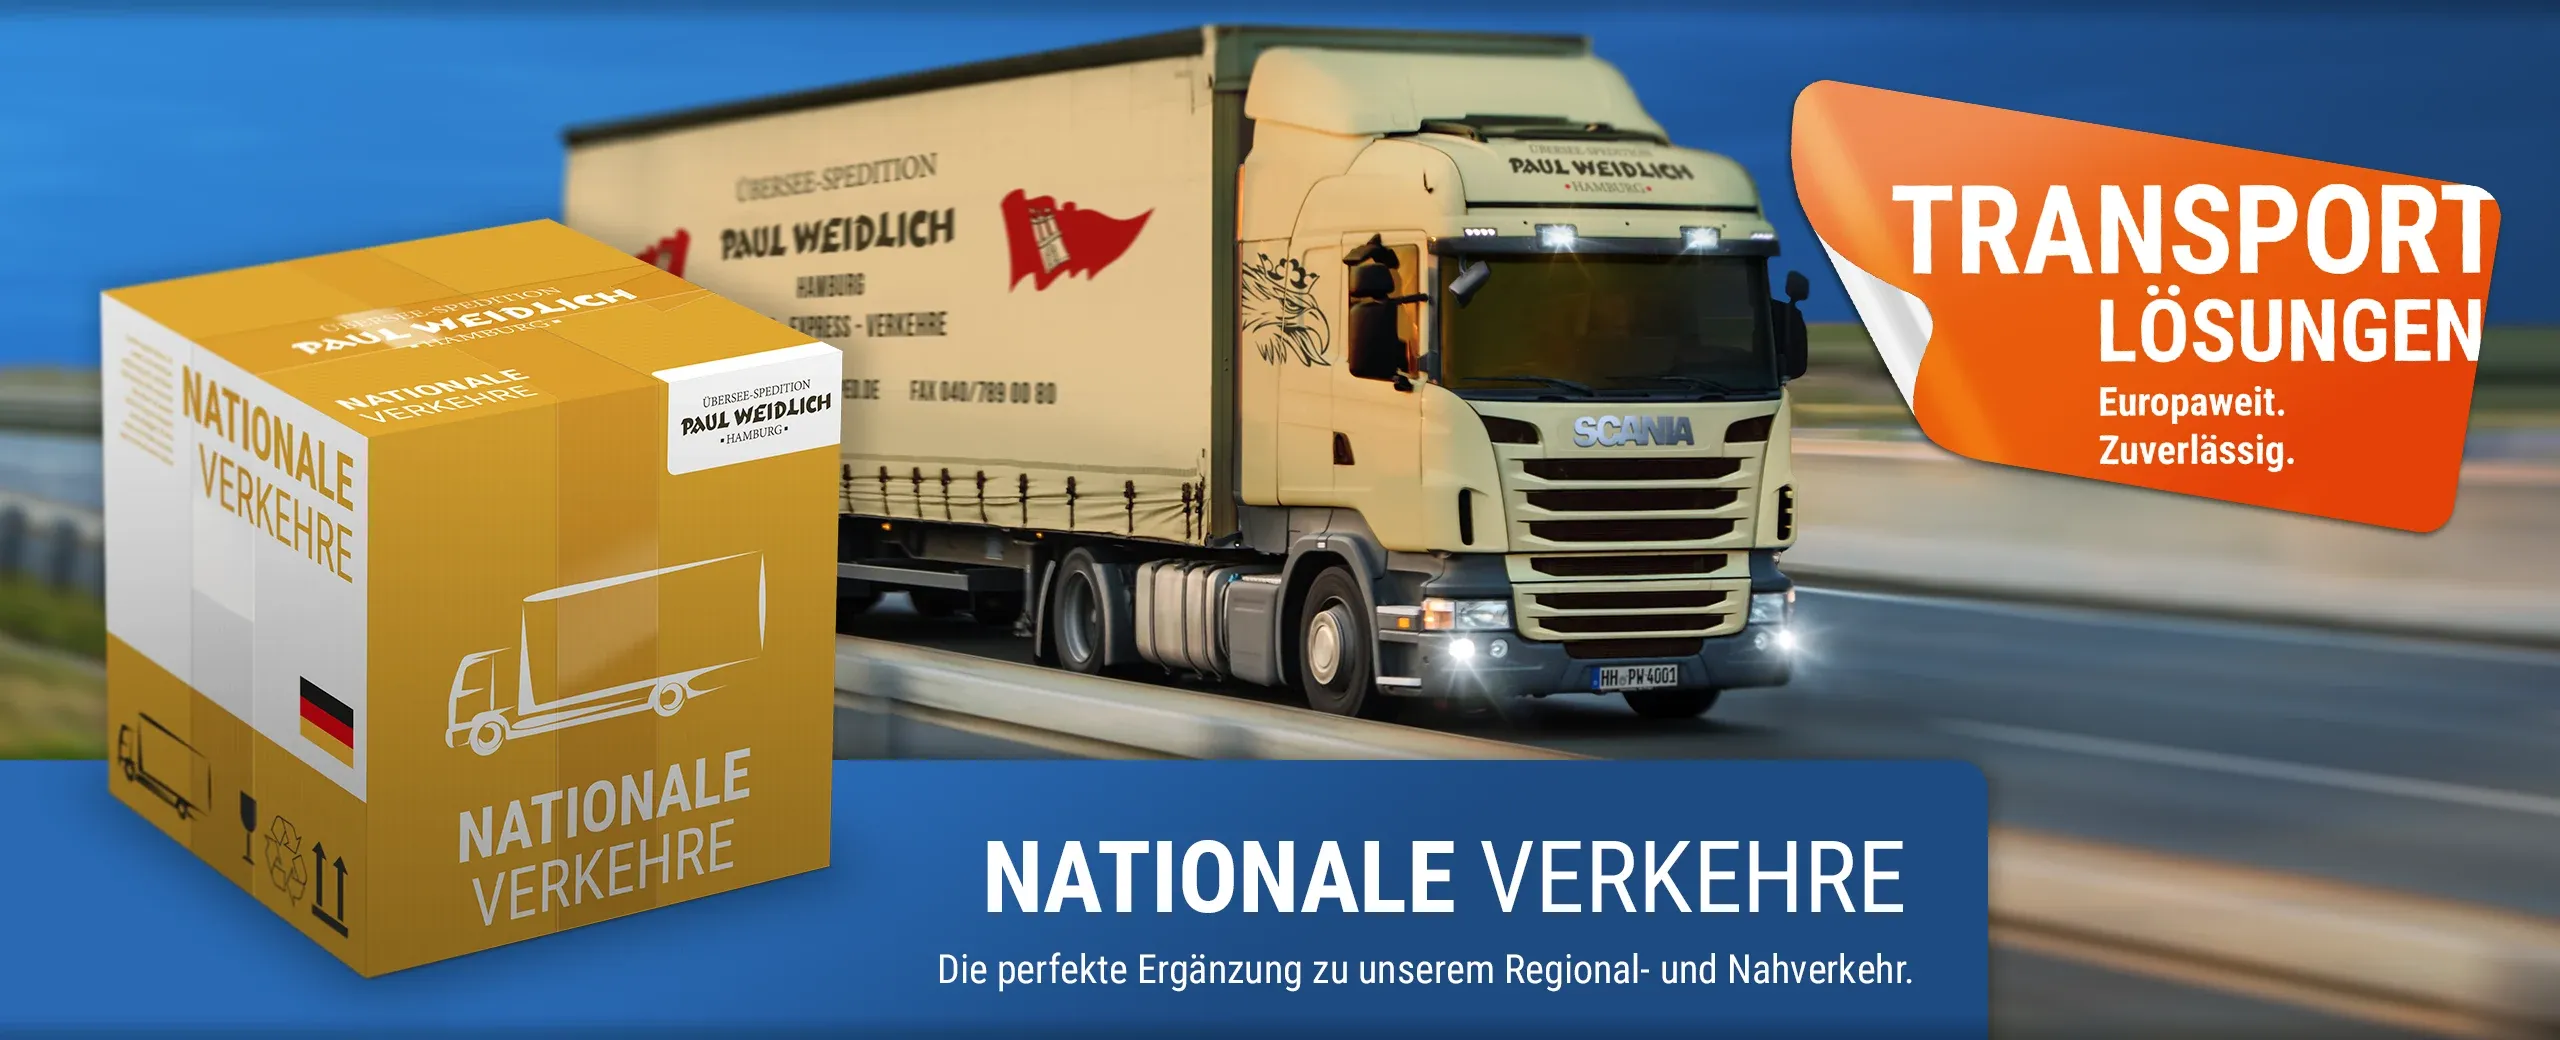 Übersee-Spedition Paul Weidlich GmbH - Hamburg - Nationale Verkehre